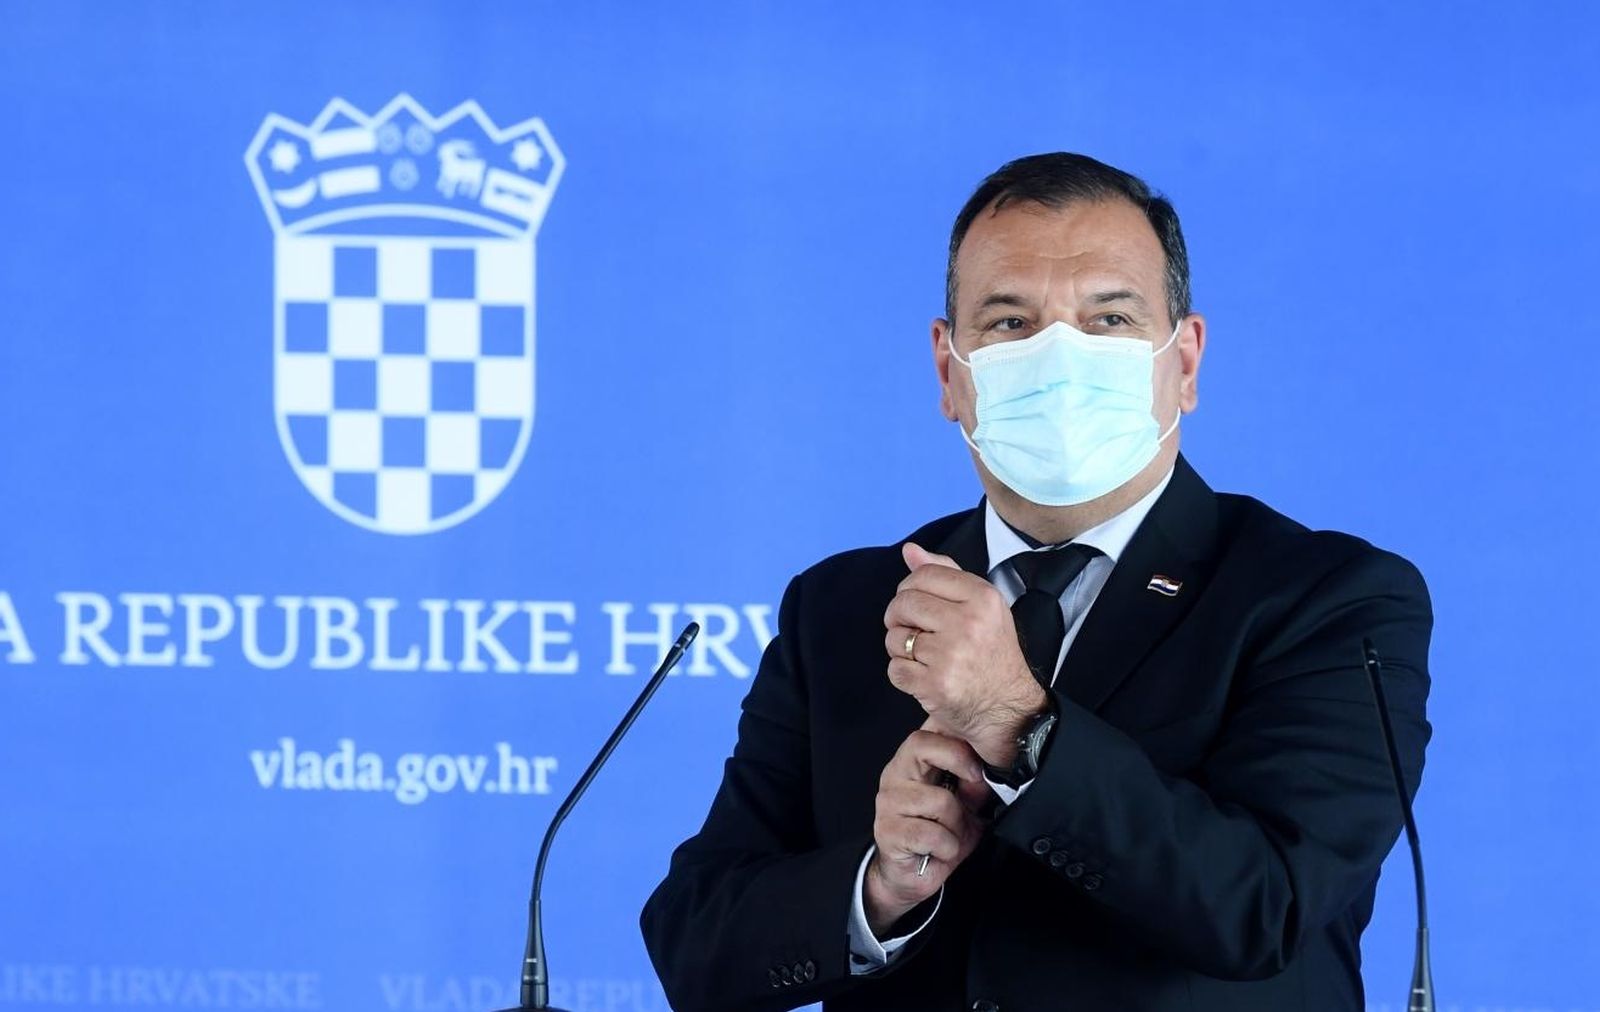 02.06.2021., Zagreb - Izjava ministra Vilija Berosa nakon sjednice vlade. 
Photo: Marko Lukunic/PIXSELL